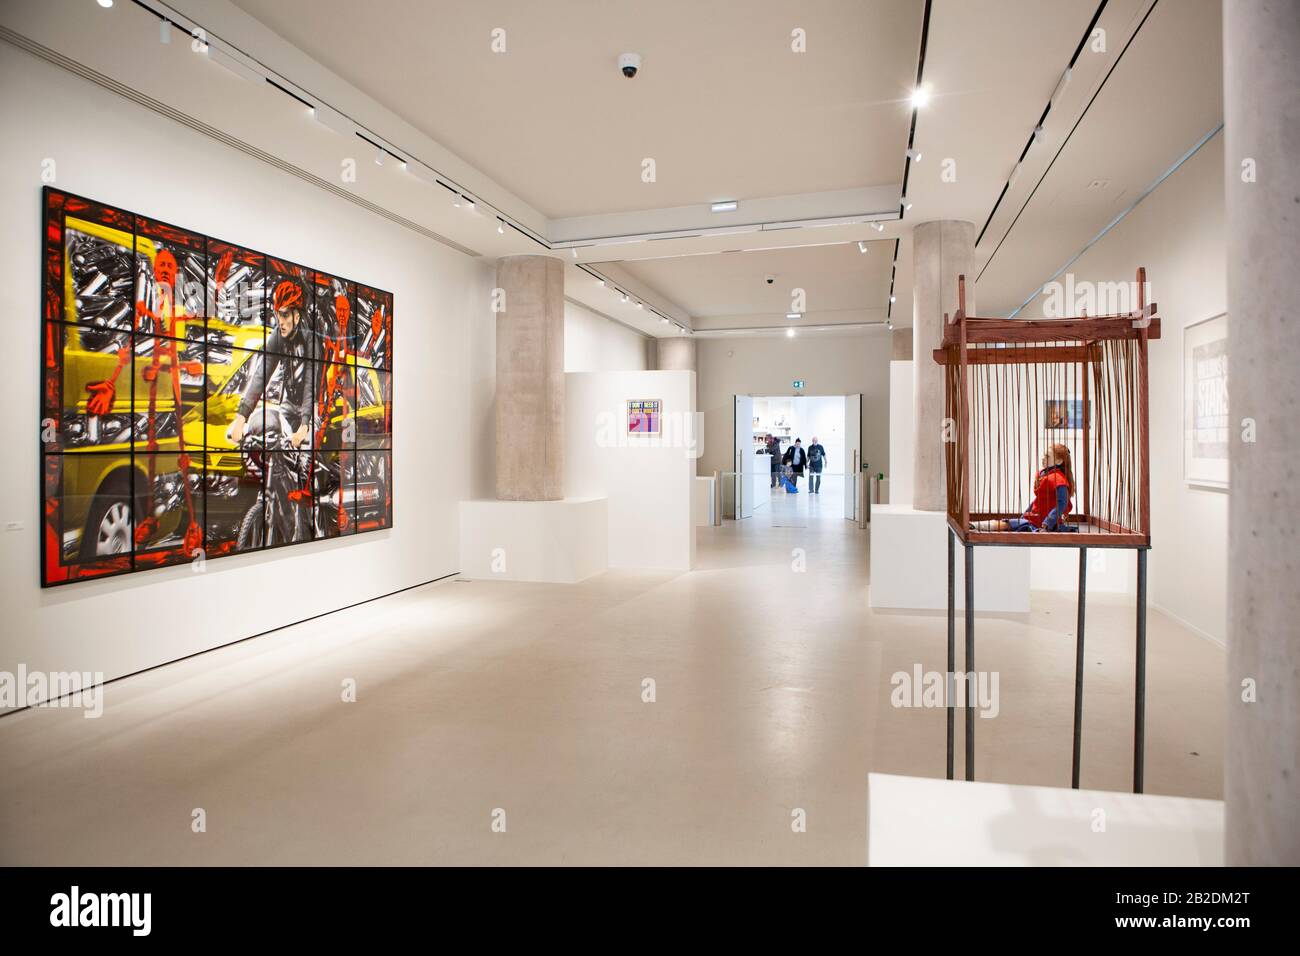 París: La Fab, una nueva galería abierta en el sudeste de París para mostrar la colección de arte contemporáneo del diseñador de moda Agnes B. entre los artistas de la colección se encuentran Jean-Michel Basquiat, Alexander Calder, Louise Bourgeois y esta obra de Gilbert & George, 'Commercial Street', 2013. Foto de stock